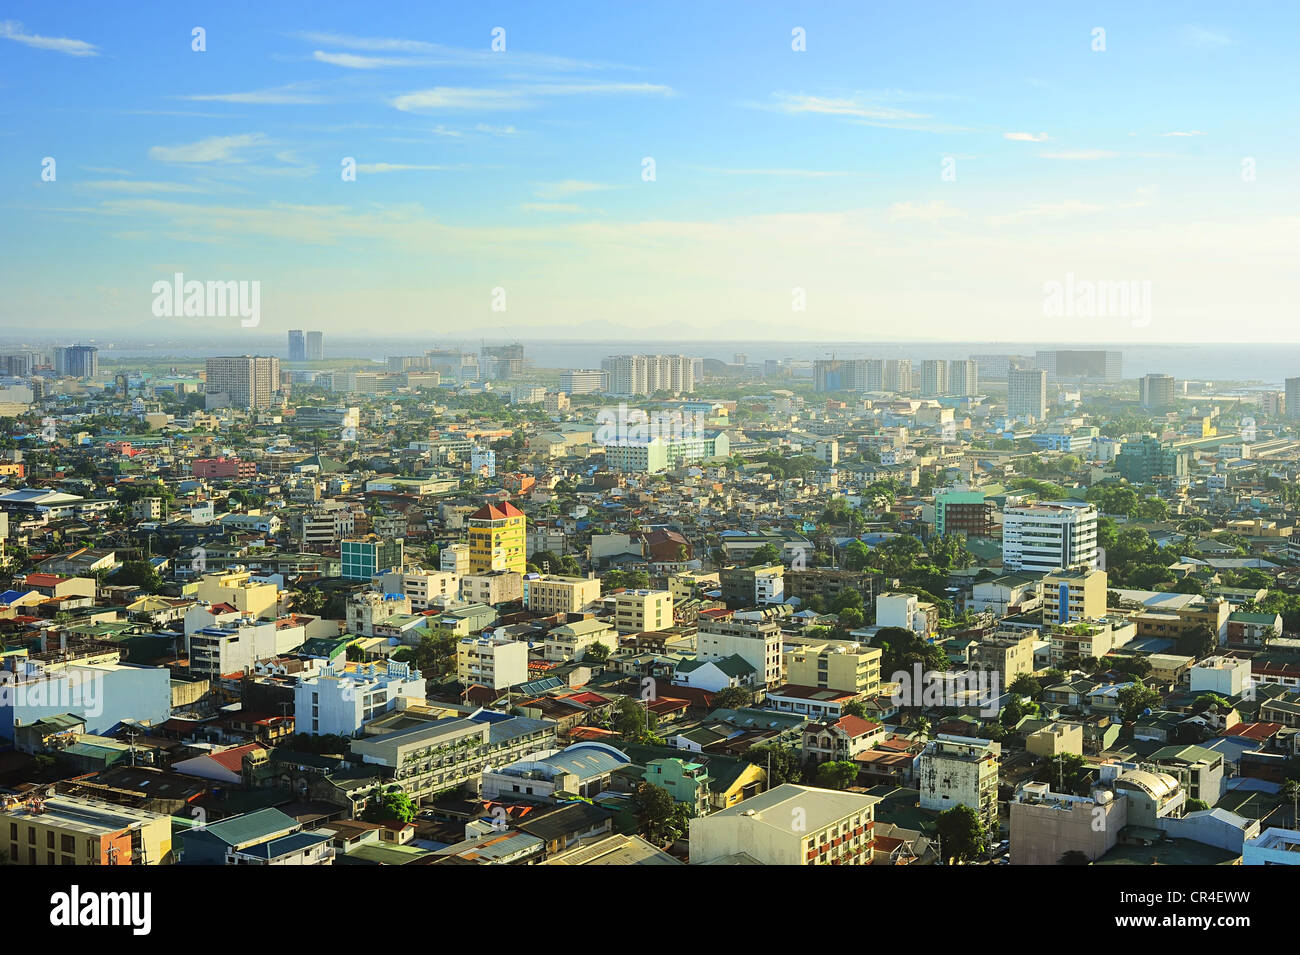 Vue aérienne sur la région métropolitaine de Manille, Philippines Banque D'Images